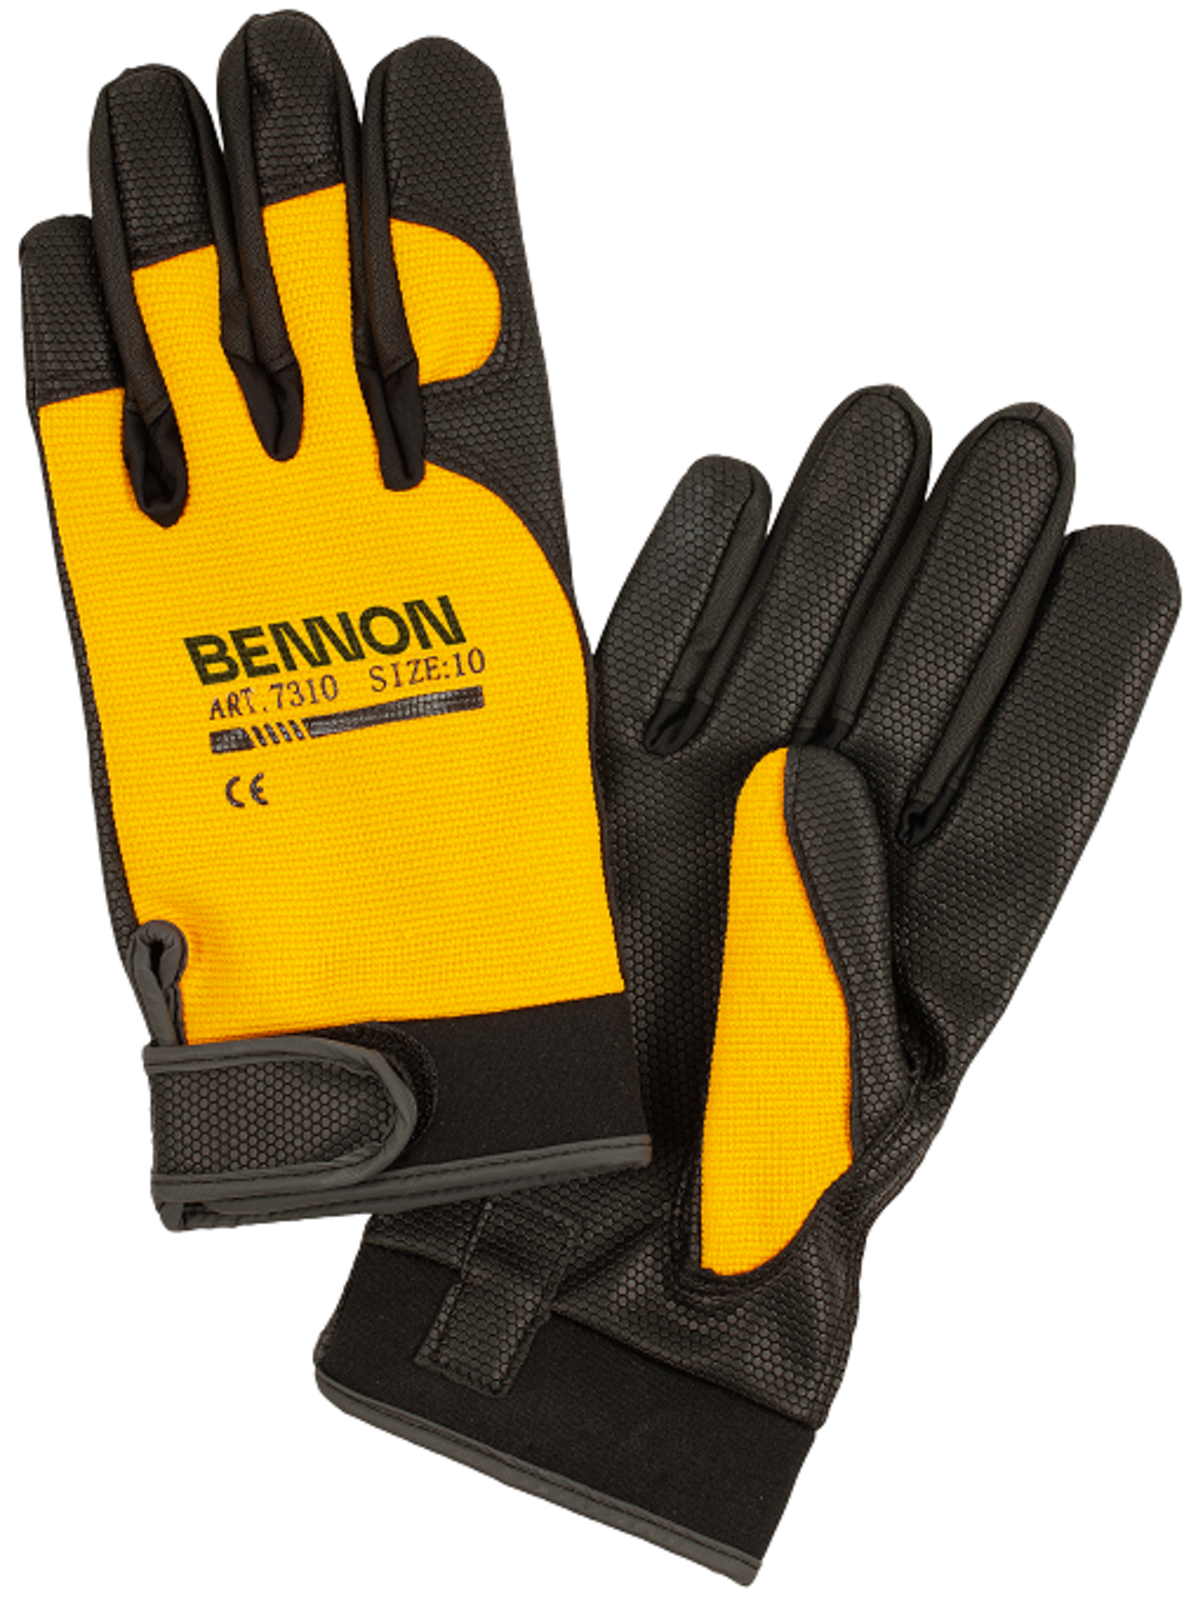 Odolné pracovné rukavice Bennon Kalytos  - veľkosť: M, farba: čierna/žltá